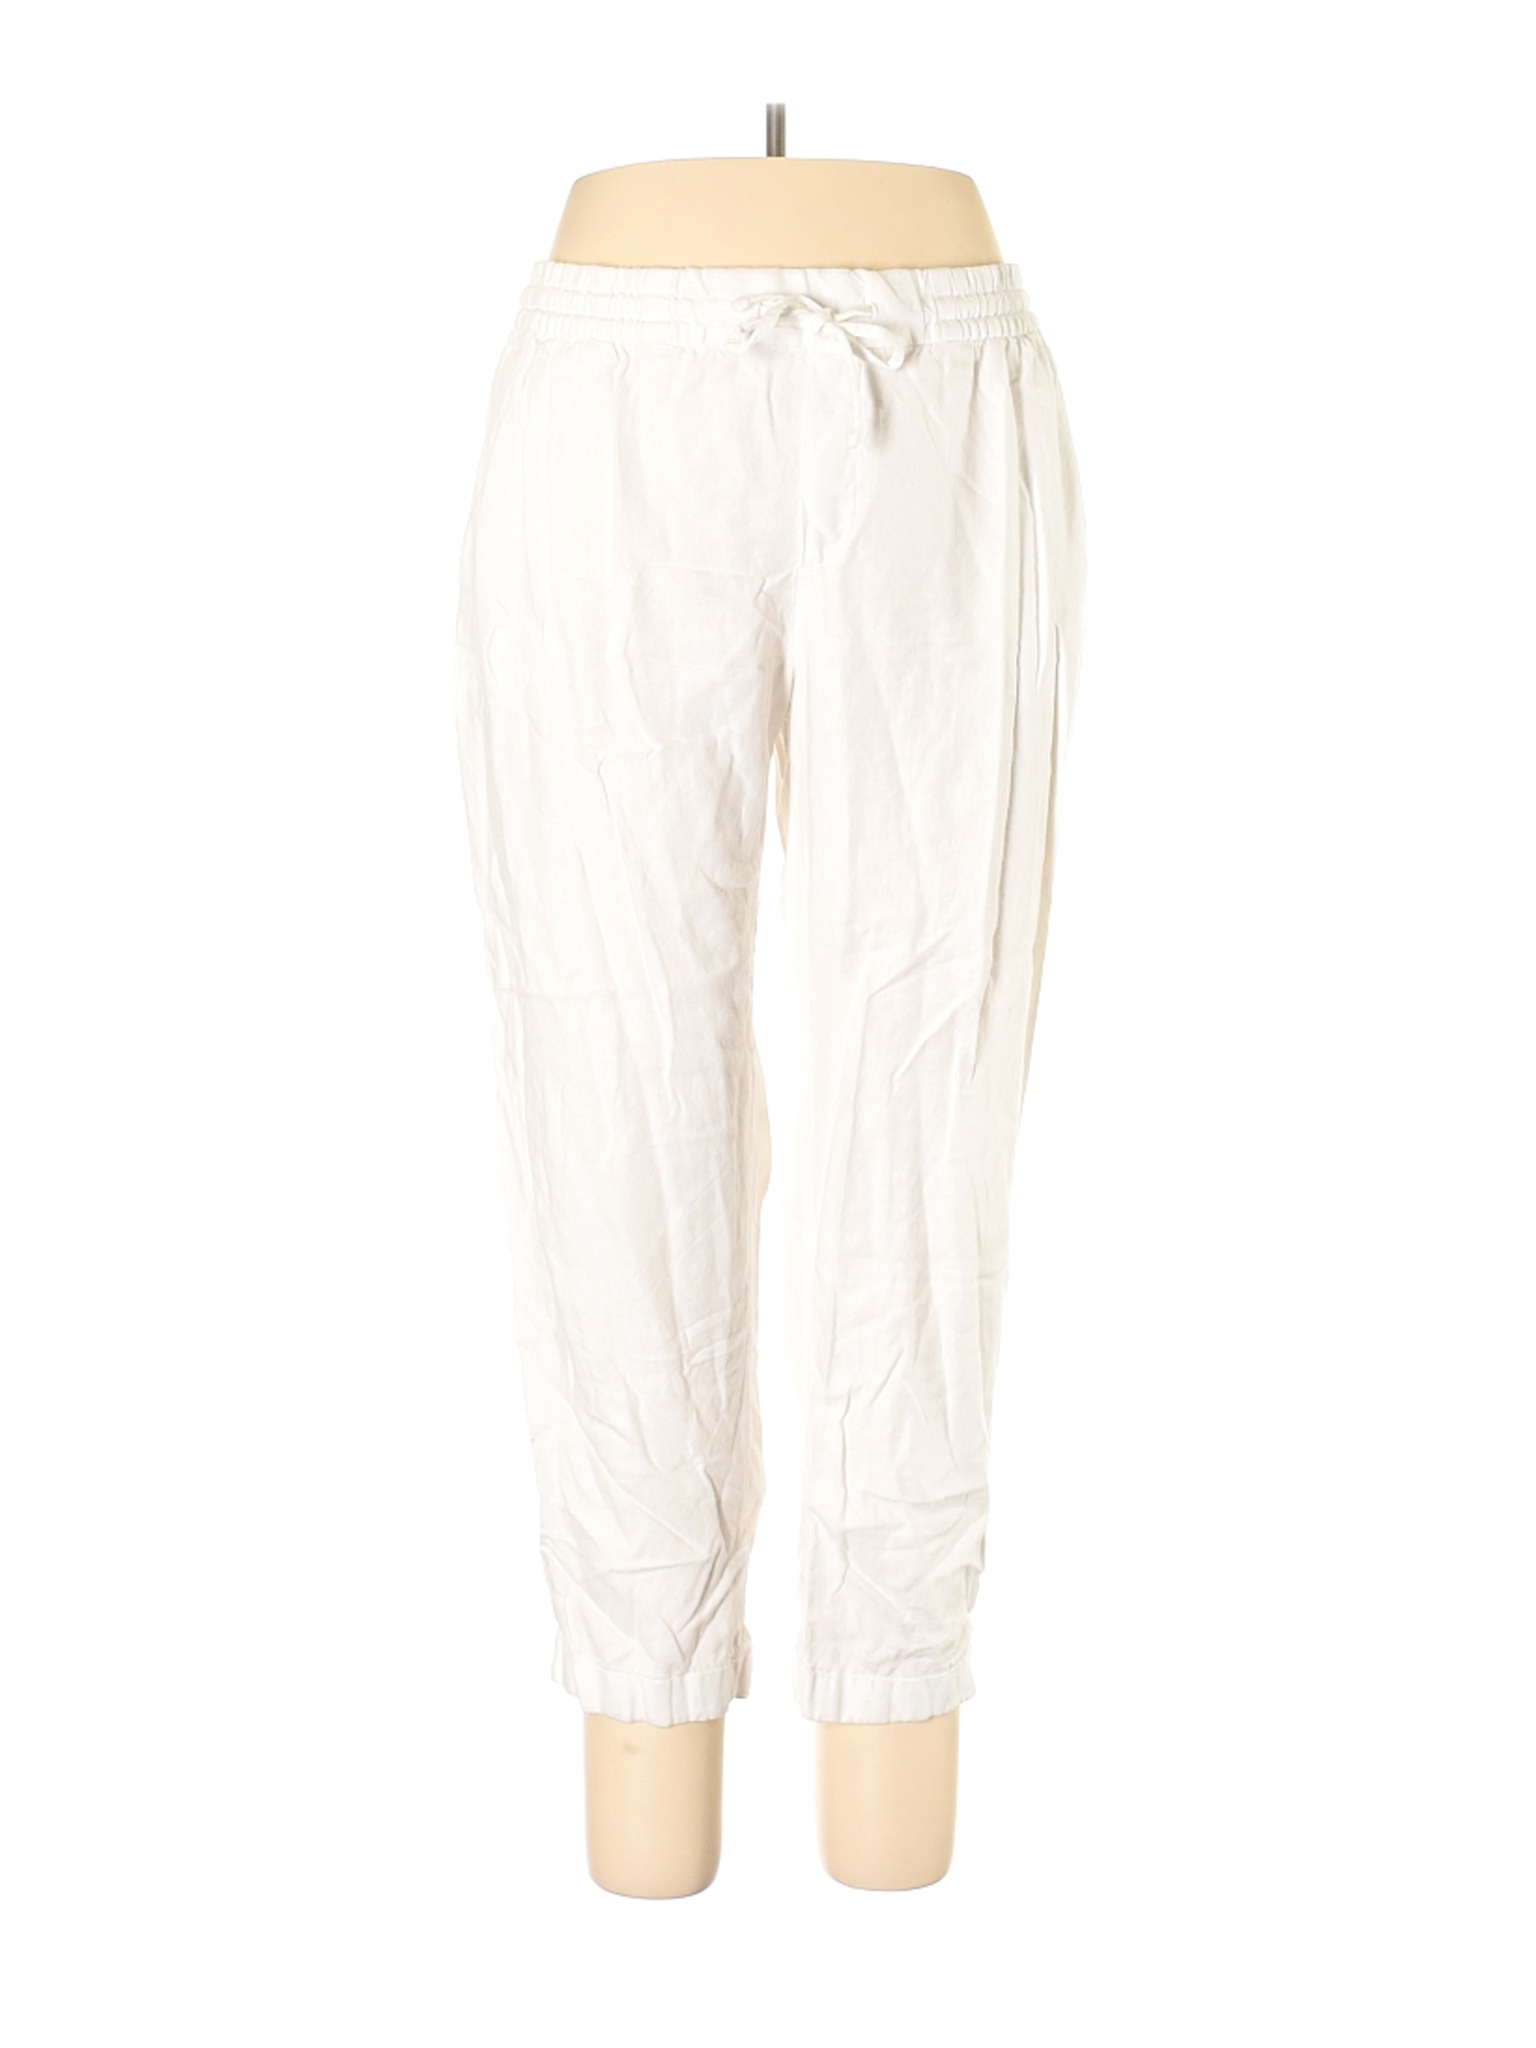 Old Navy Women White Linen Pants L | eBay